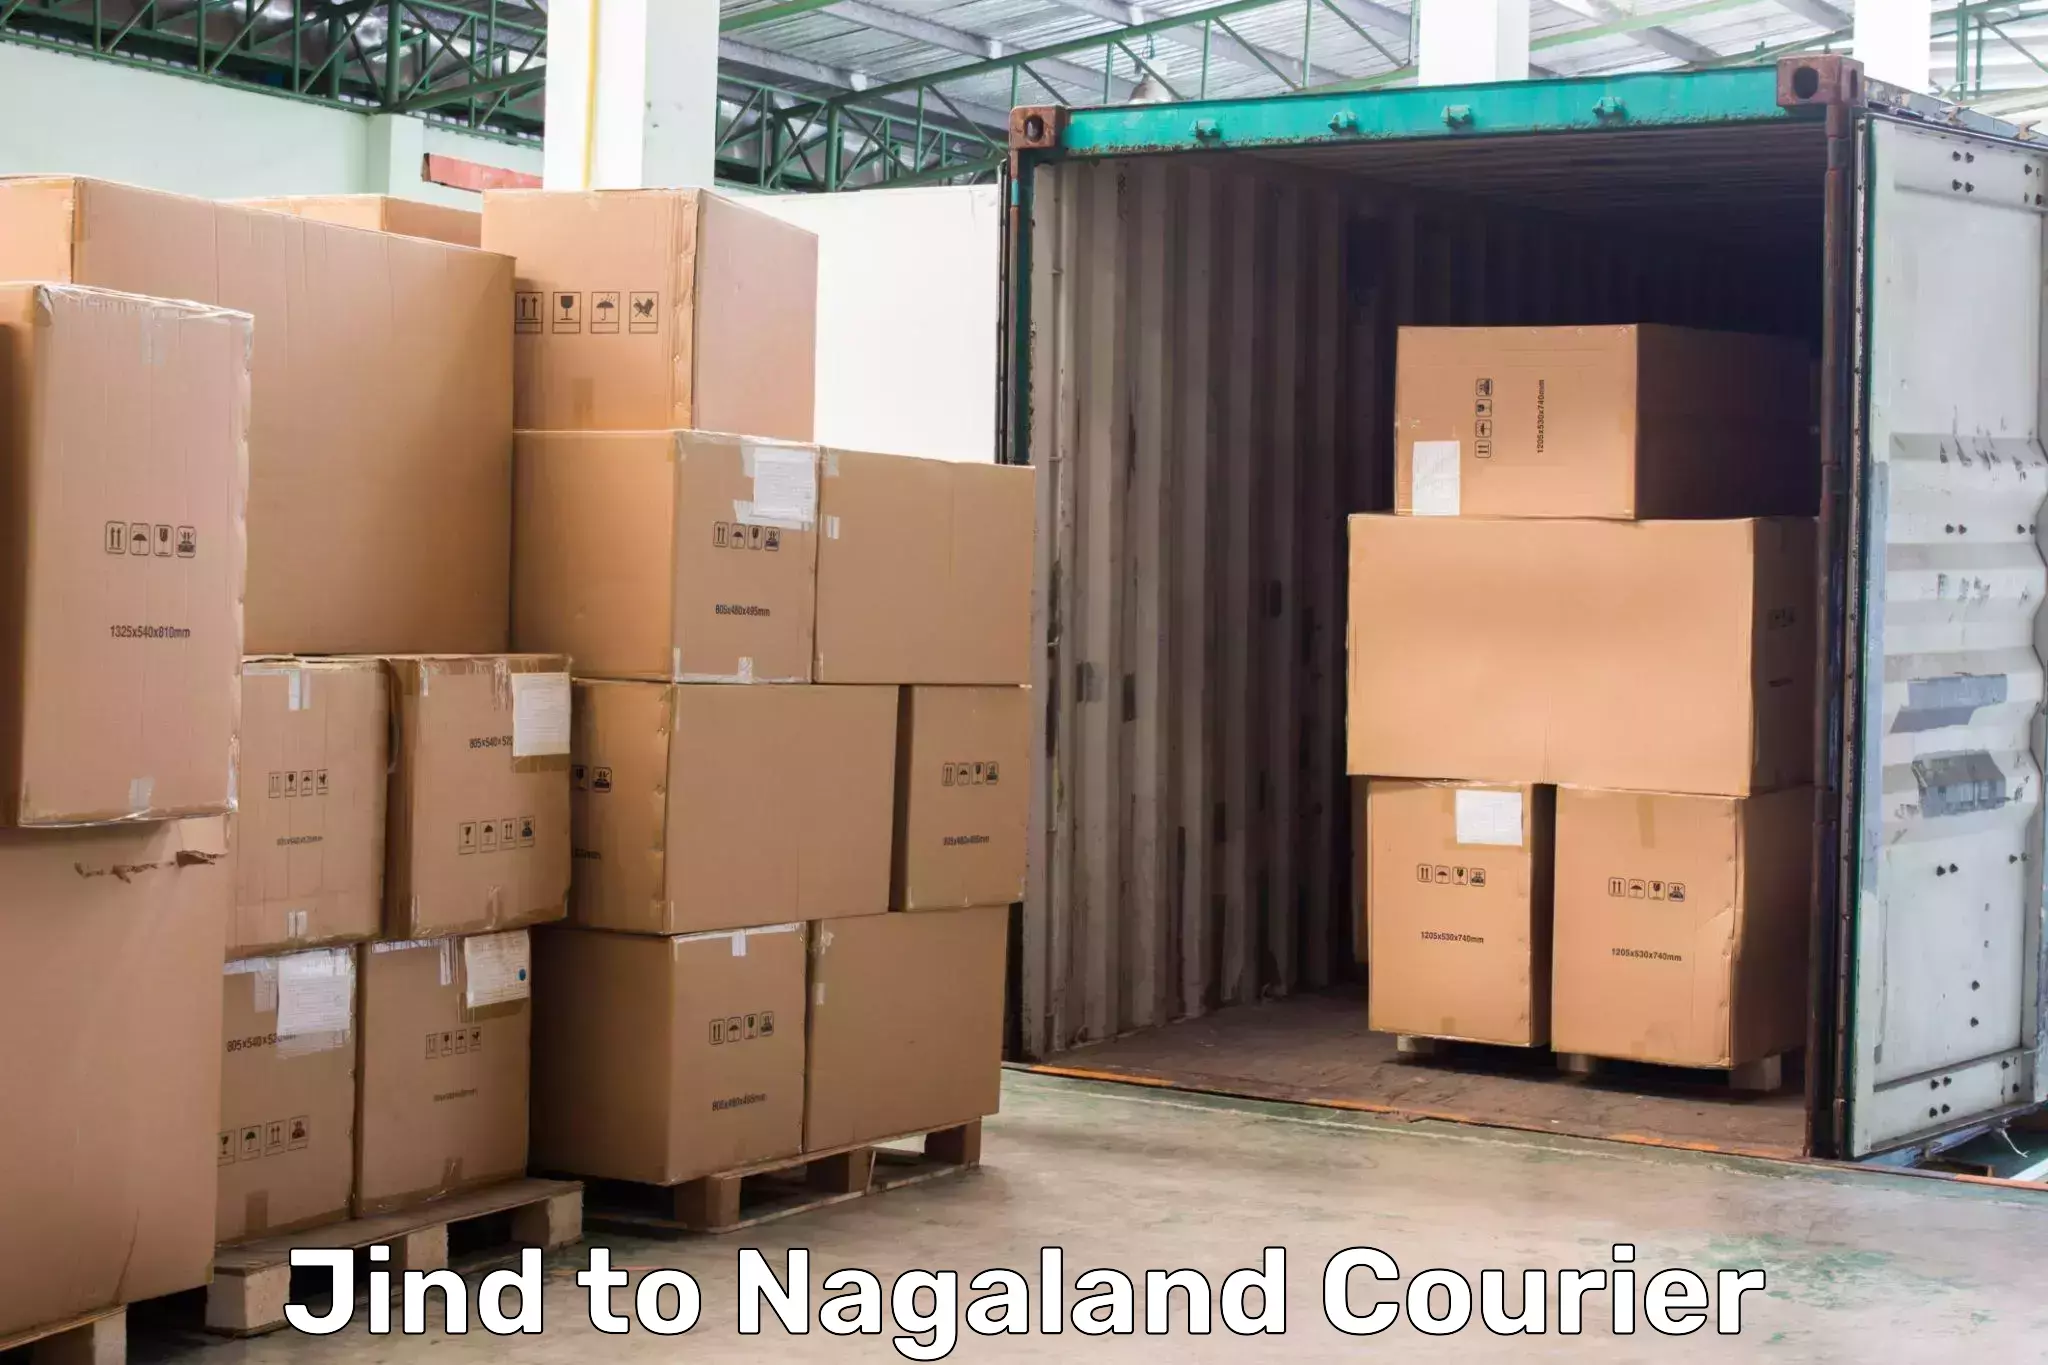 Nationwide parcel services Jind to Nagaland